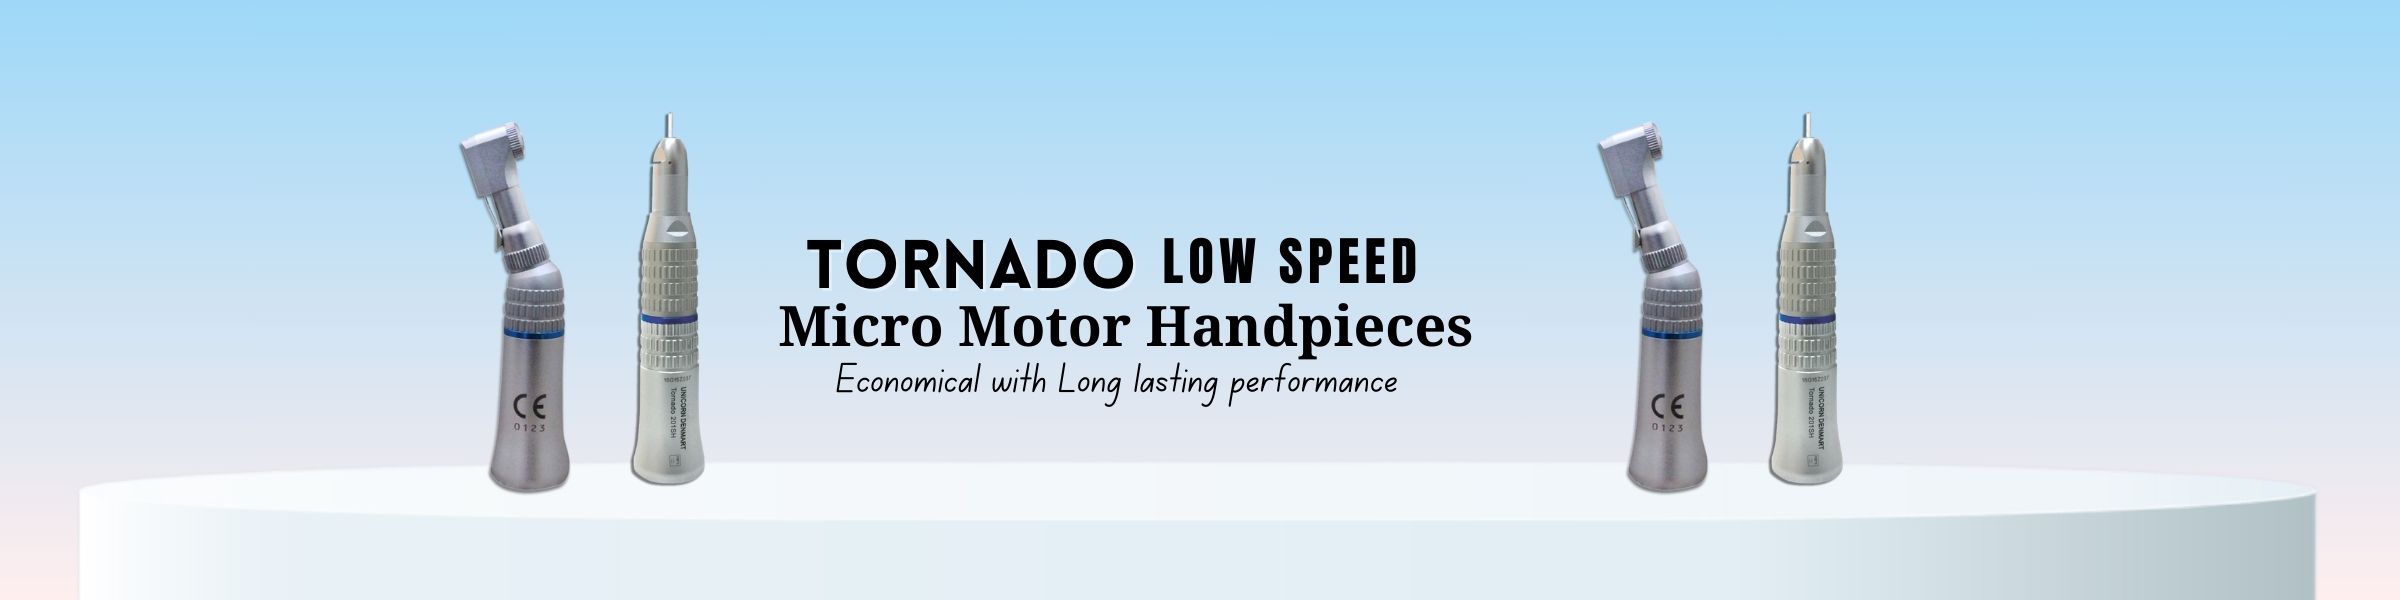 Tornado Low Speed Micro Motor Handpieces